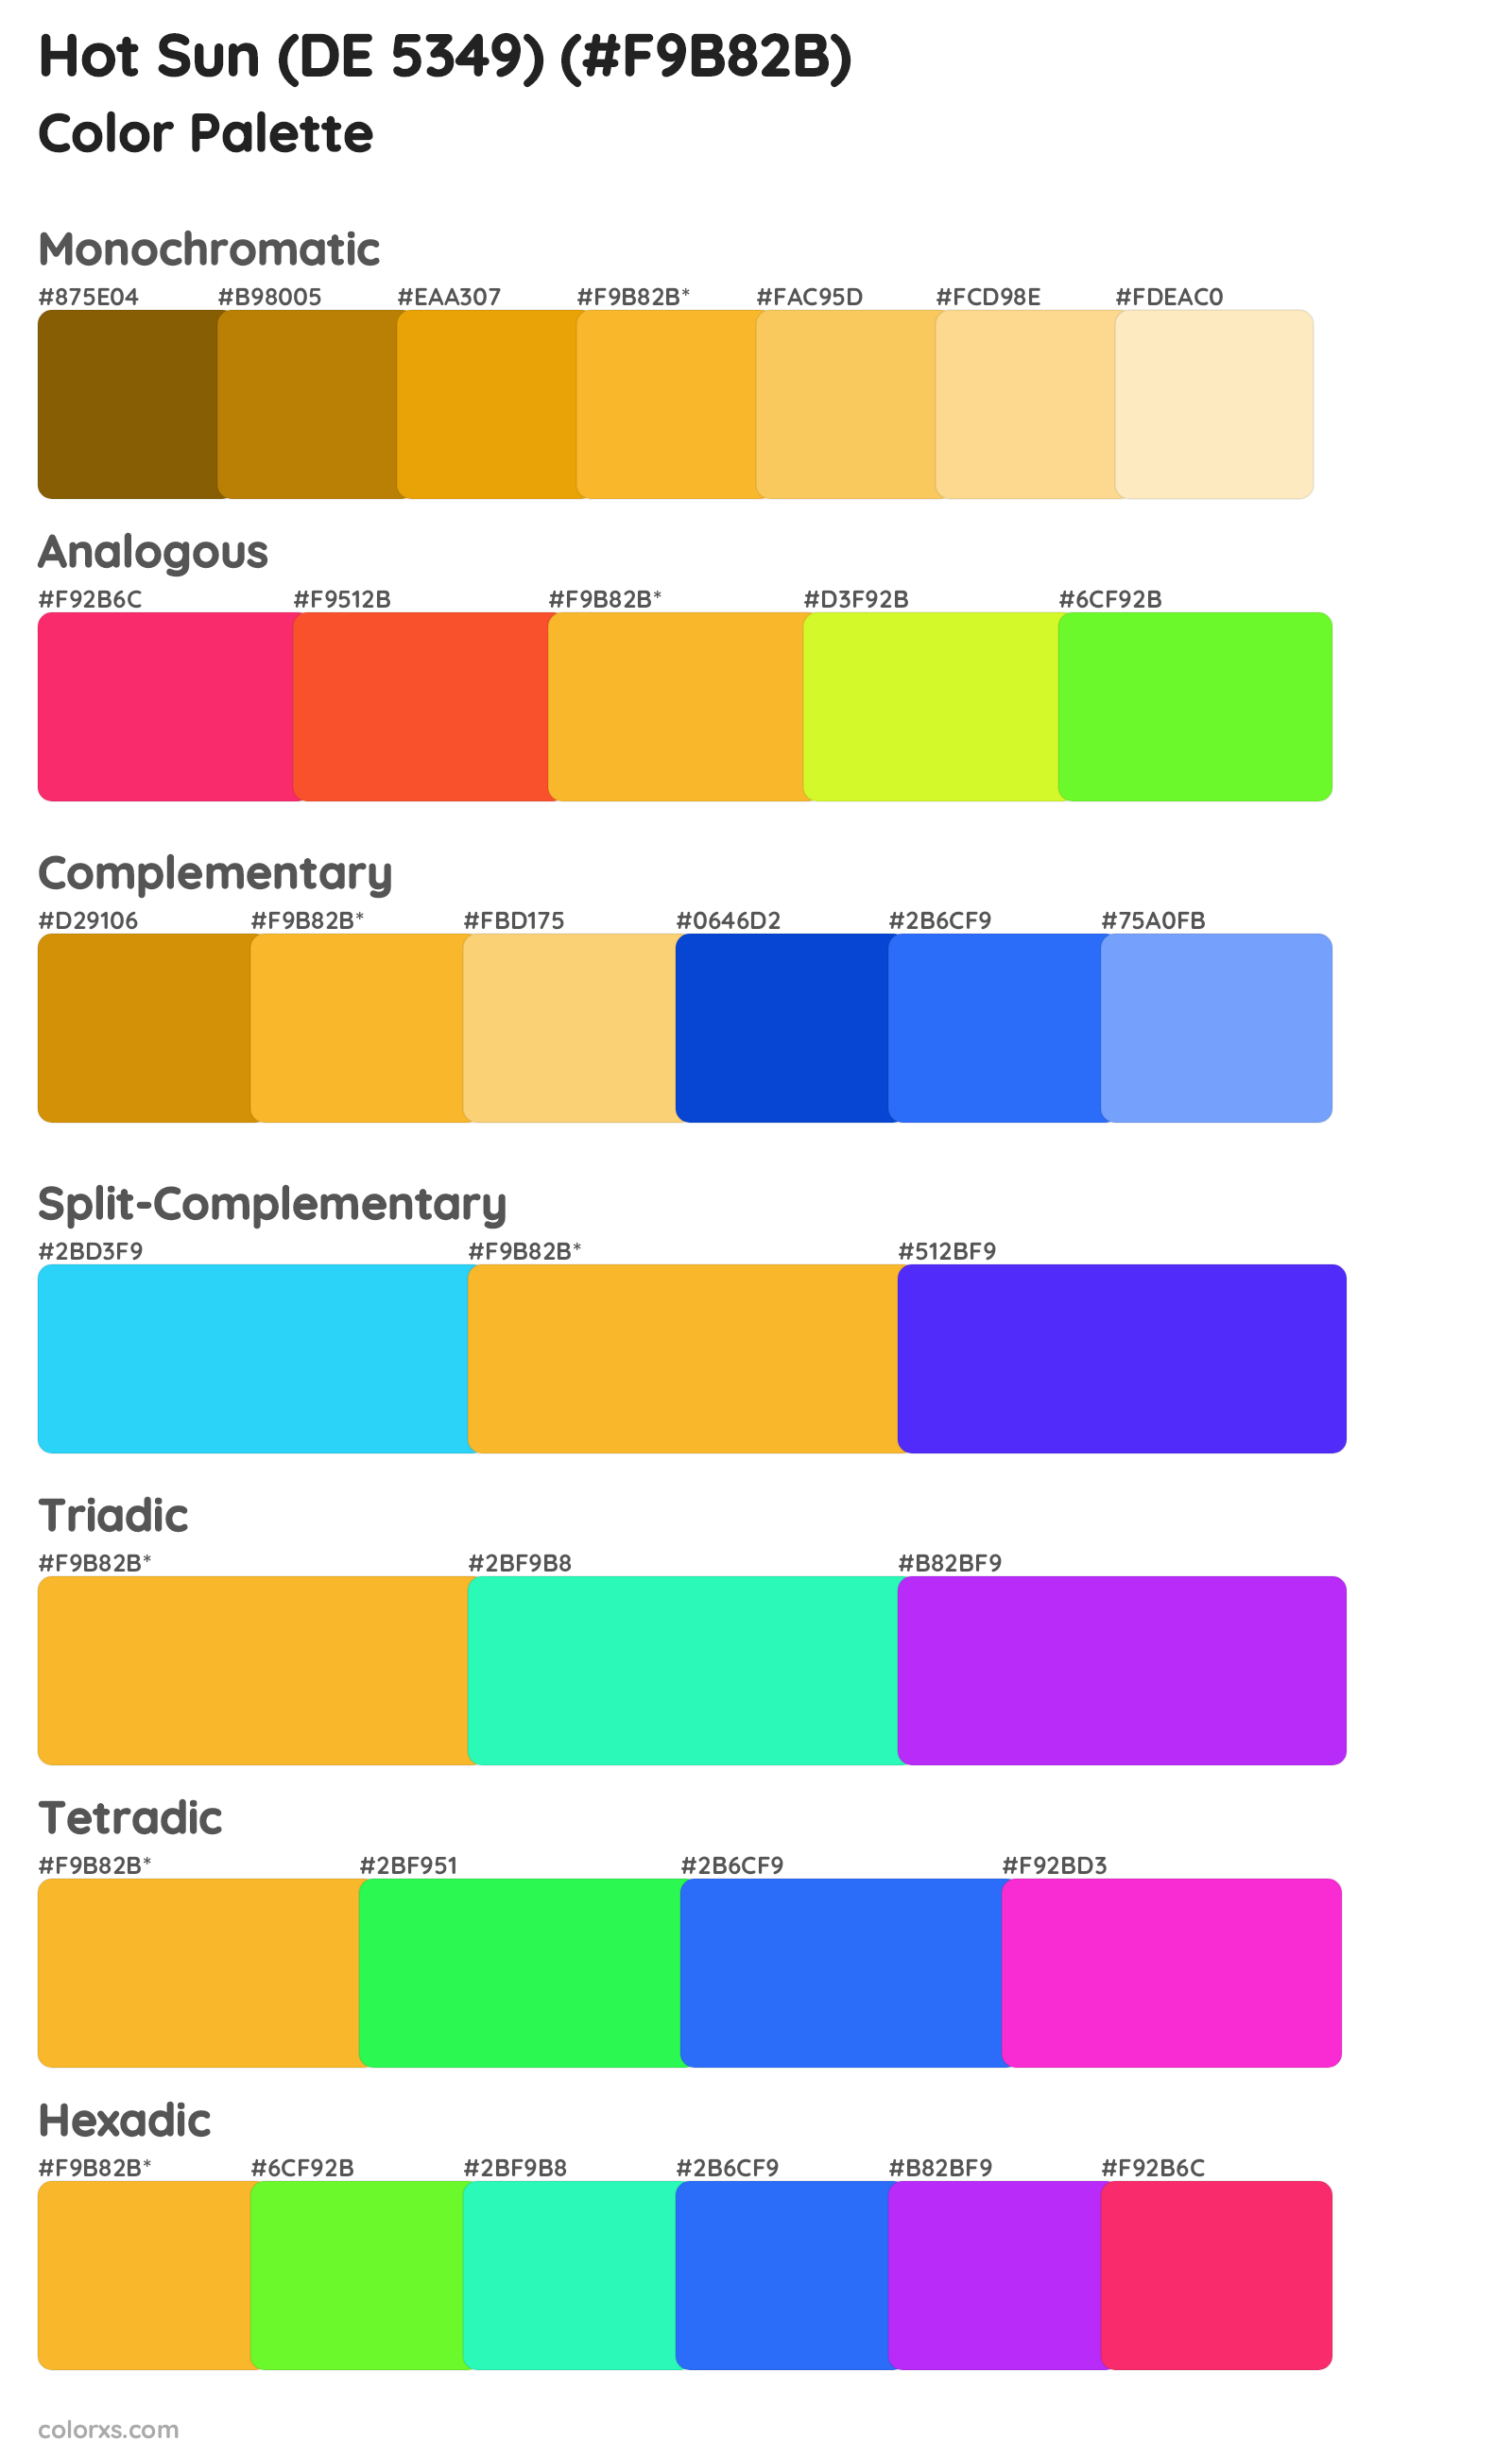 Hot Sun (DE 5349) Color Scheme Palettes